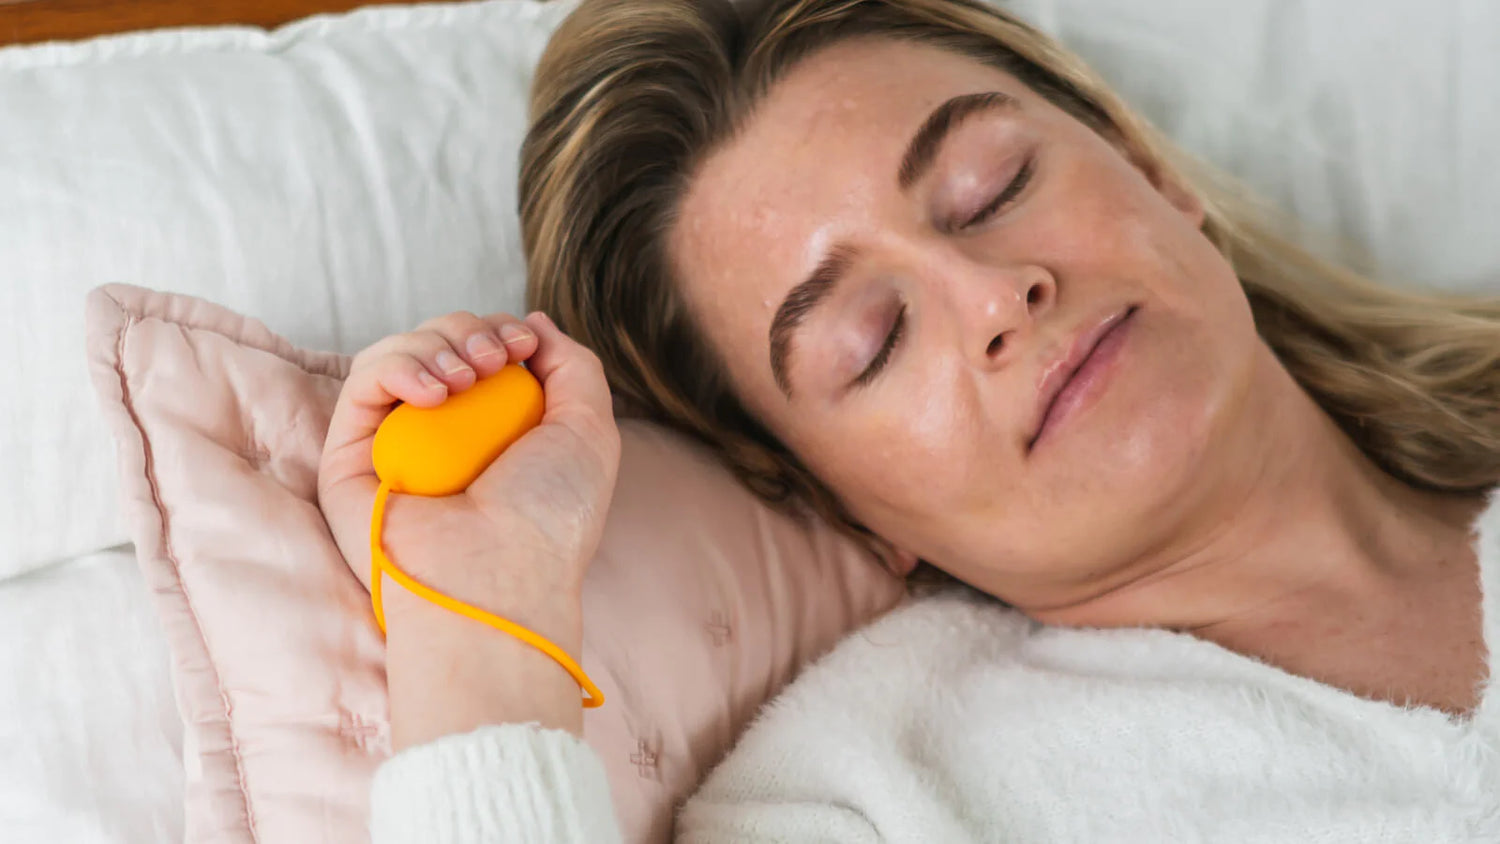 Ce nouveau dispositif révolutionnaire peut soulager l'insomnie et réduire l'anxiété de manière entièrement naturelle en quelques minutes.